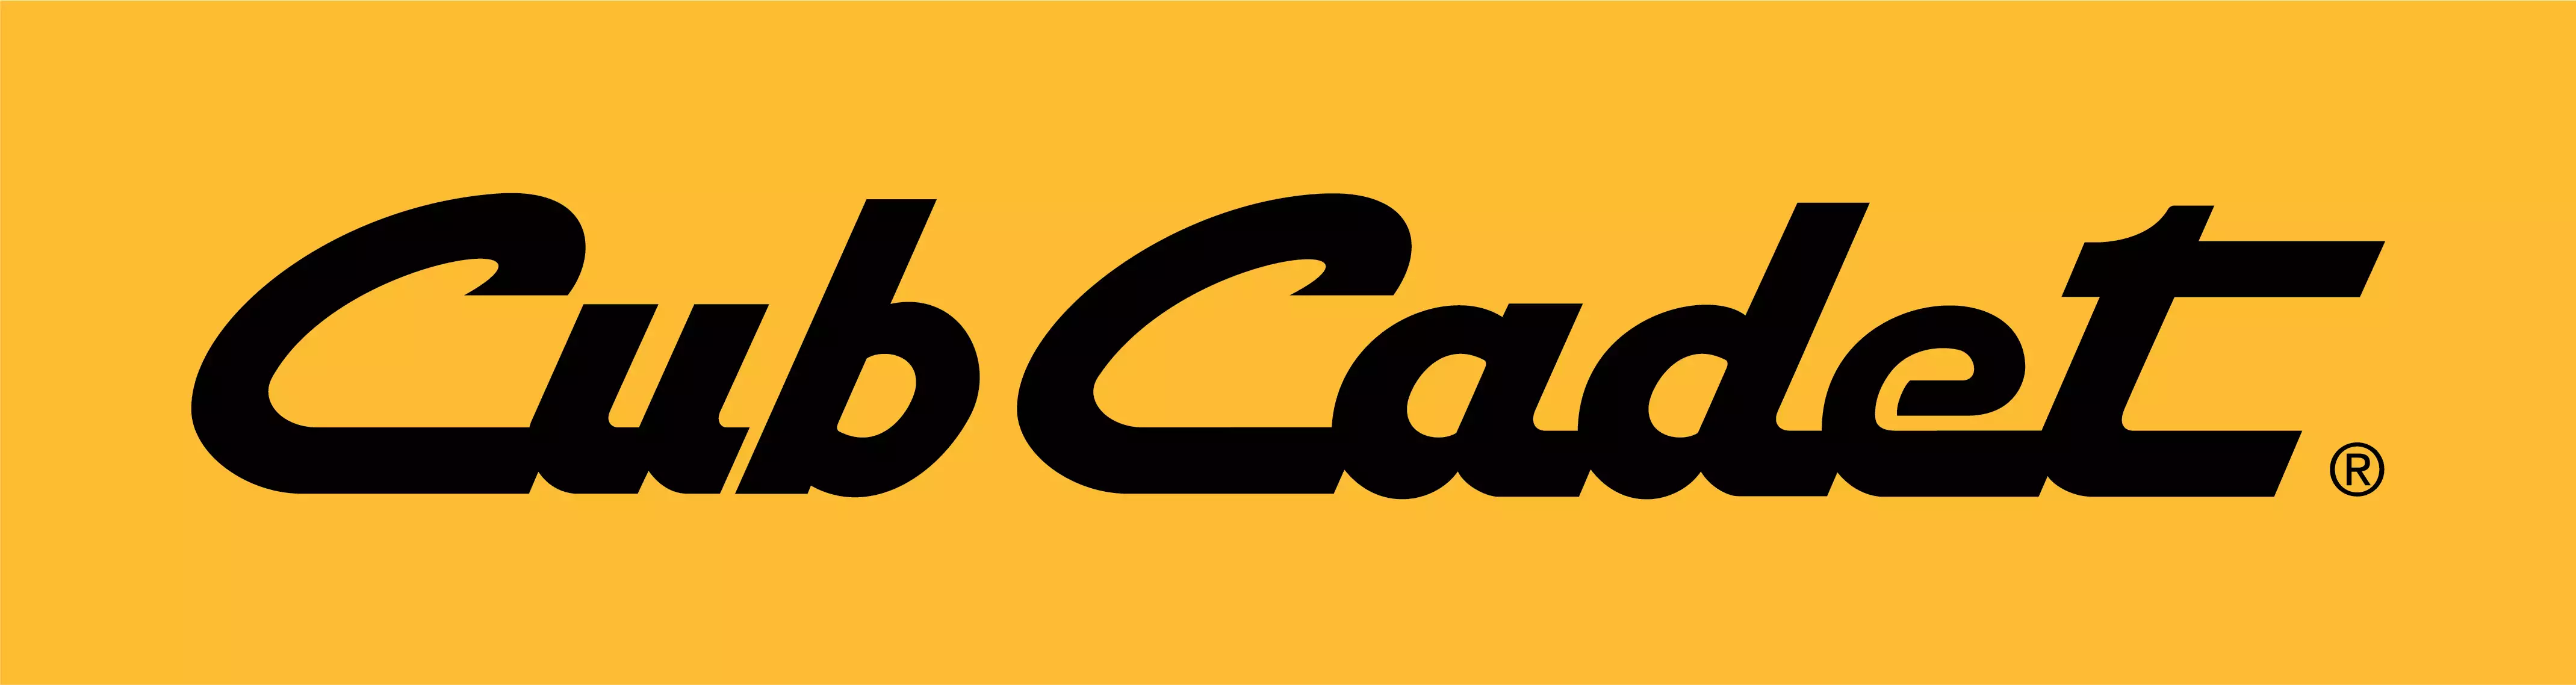 CubCadet_Logo_2C